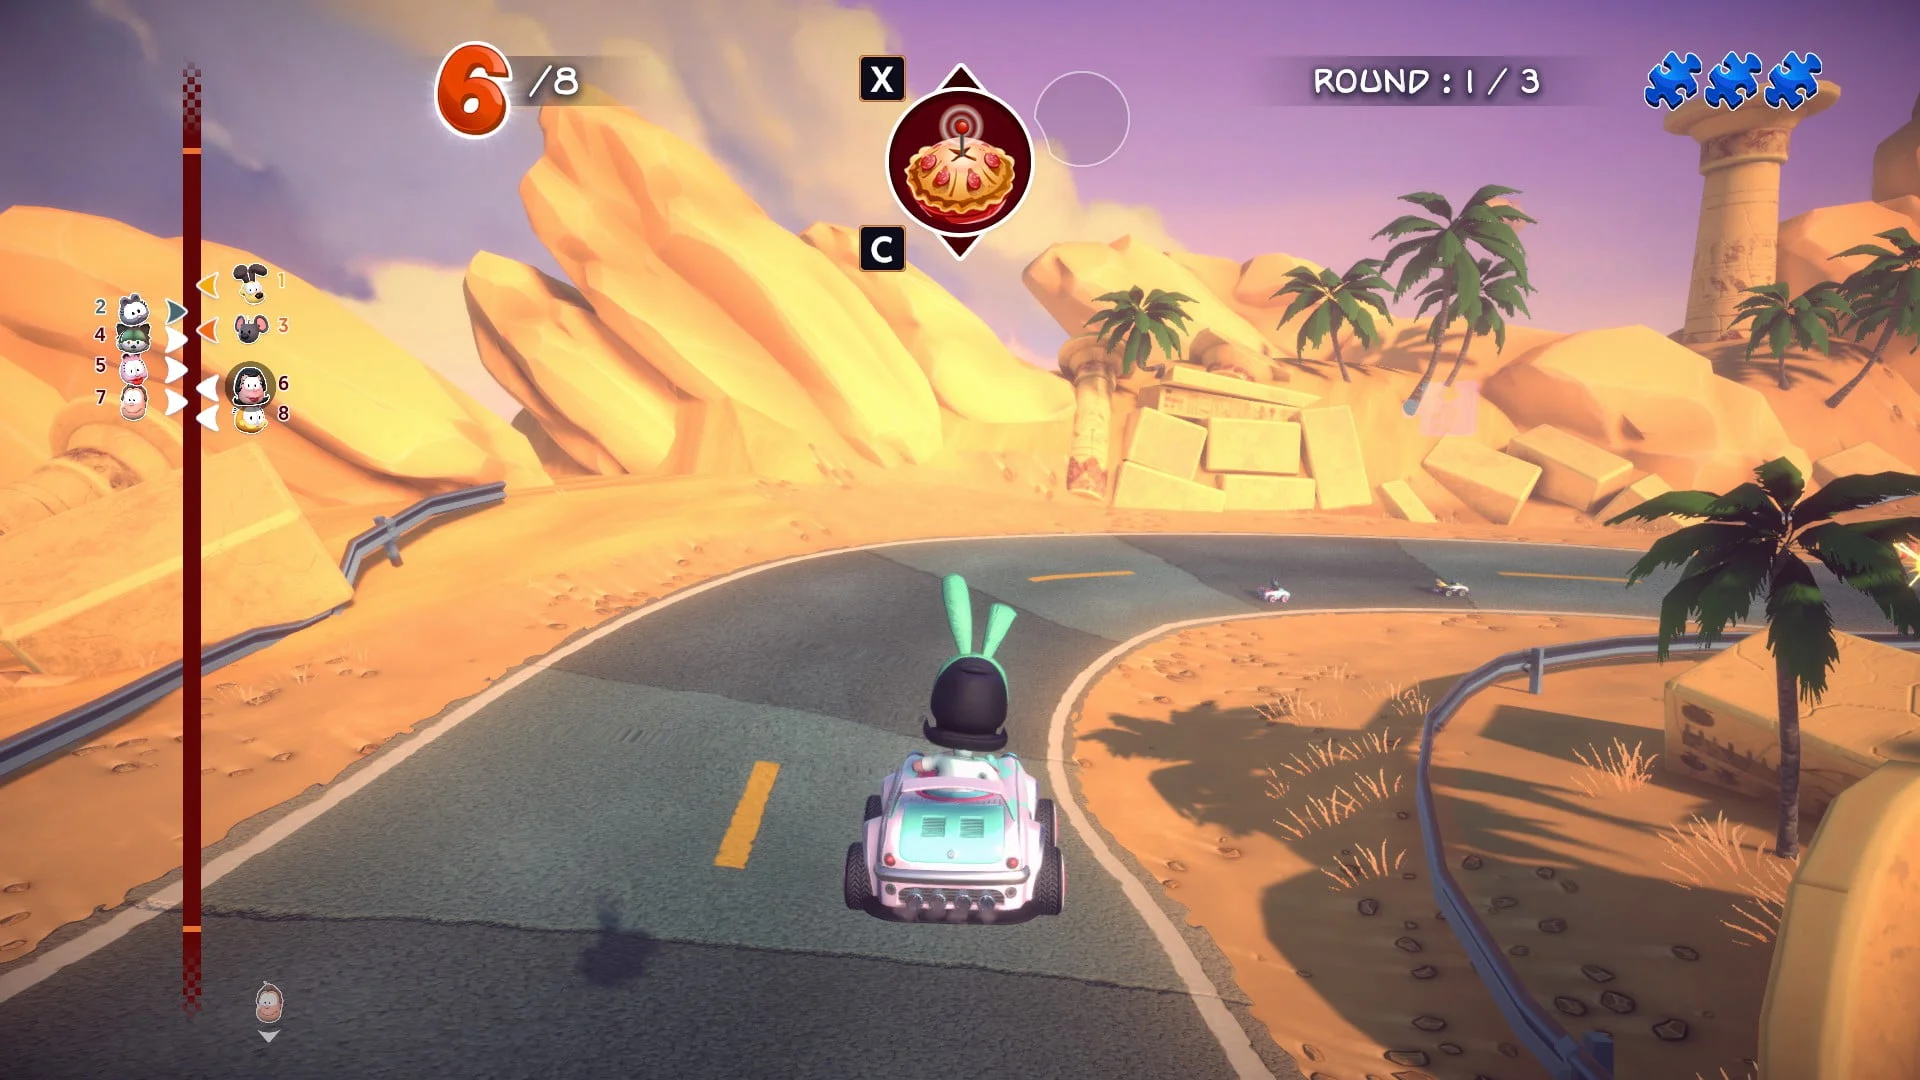 100% Garfield Kart Achievements